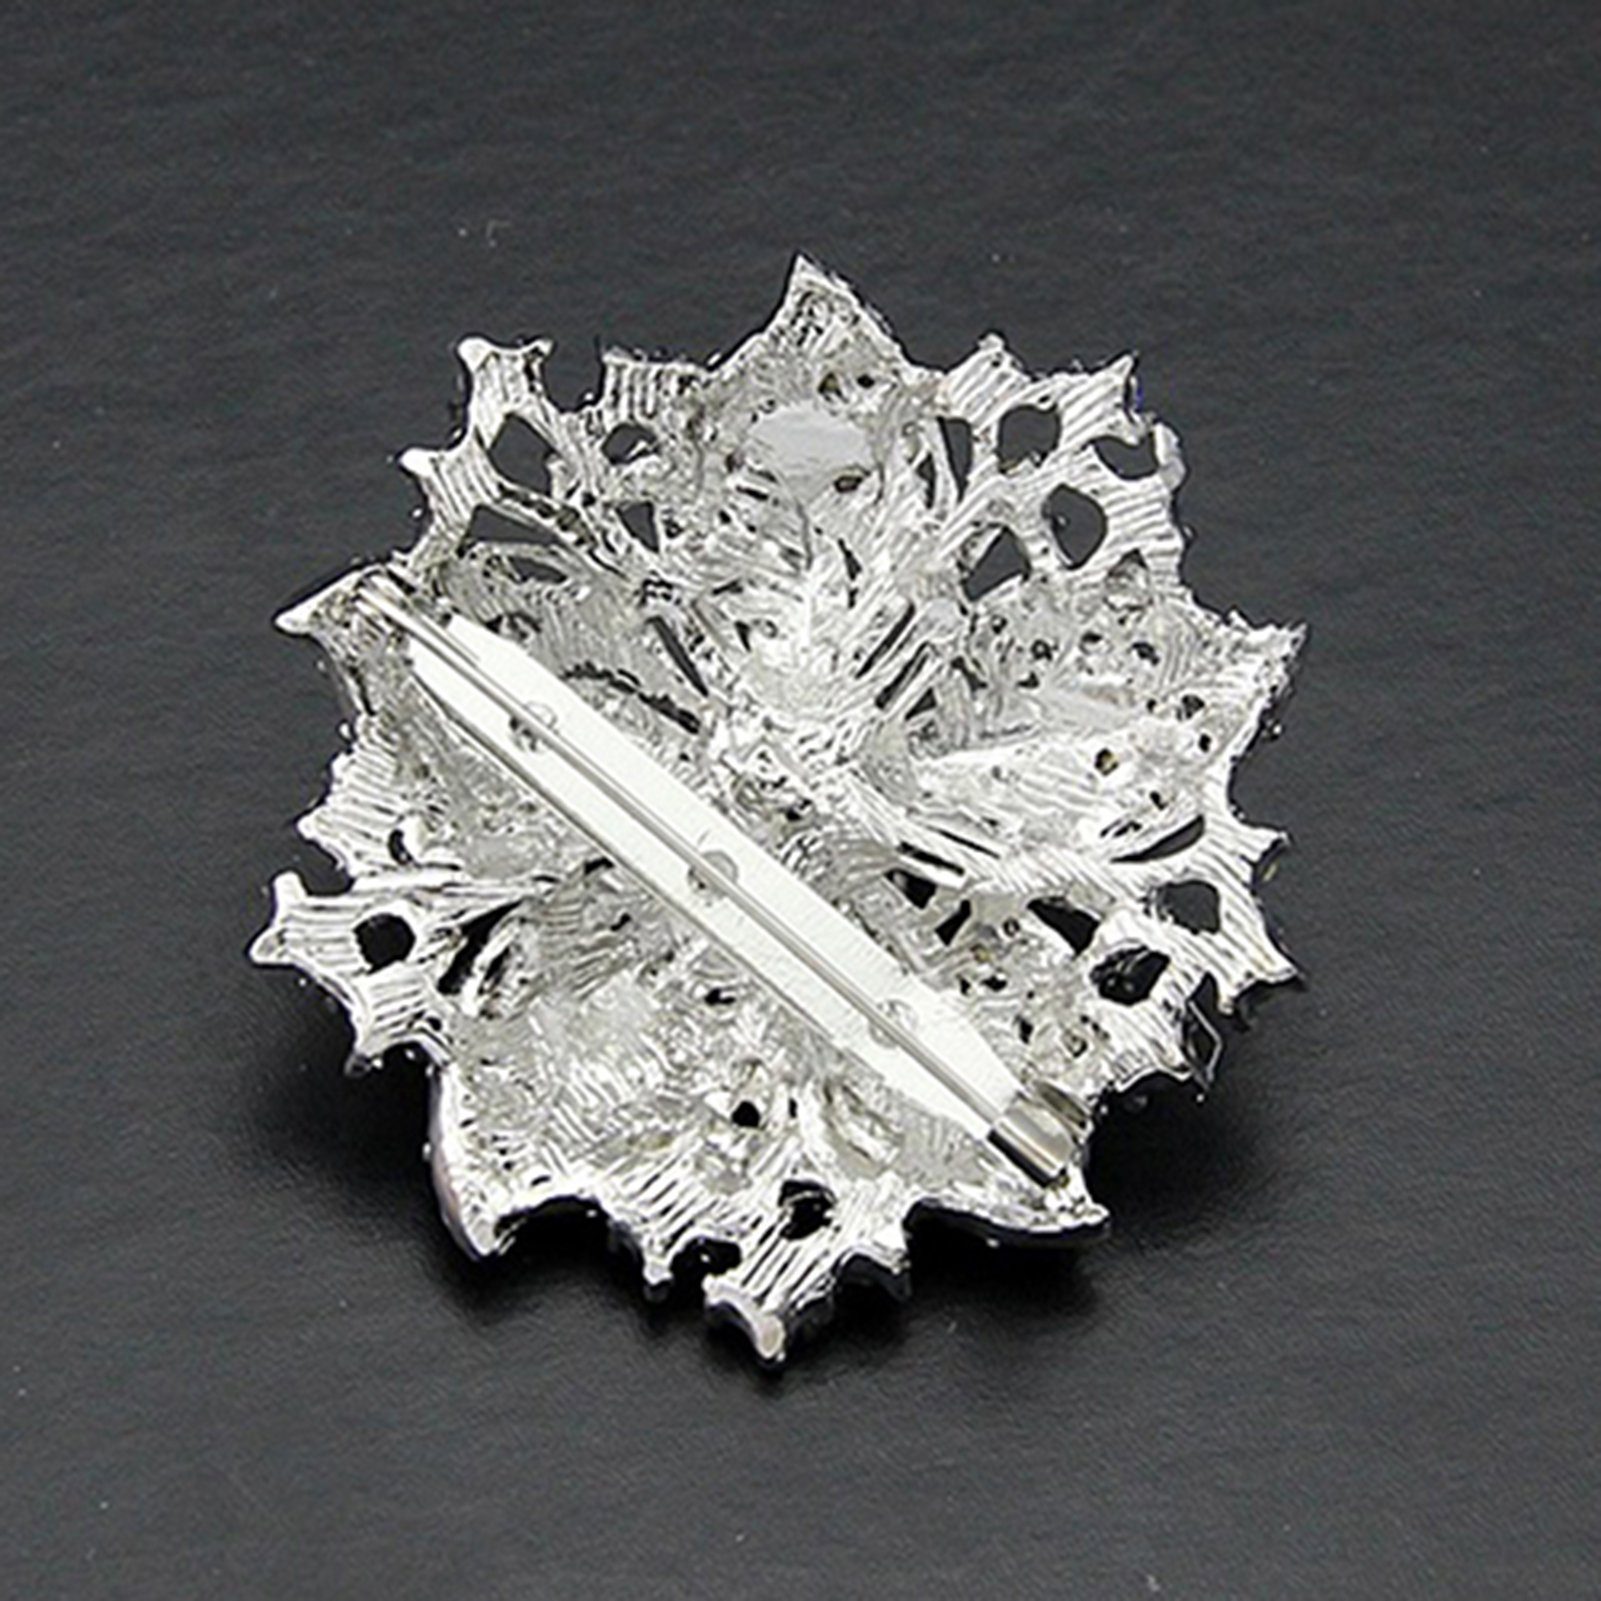 Rutaqian D Corsage Brosche Kristall Vintage Brosche Pin, Braut Brosche Blume inspirierte